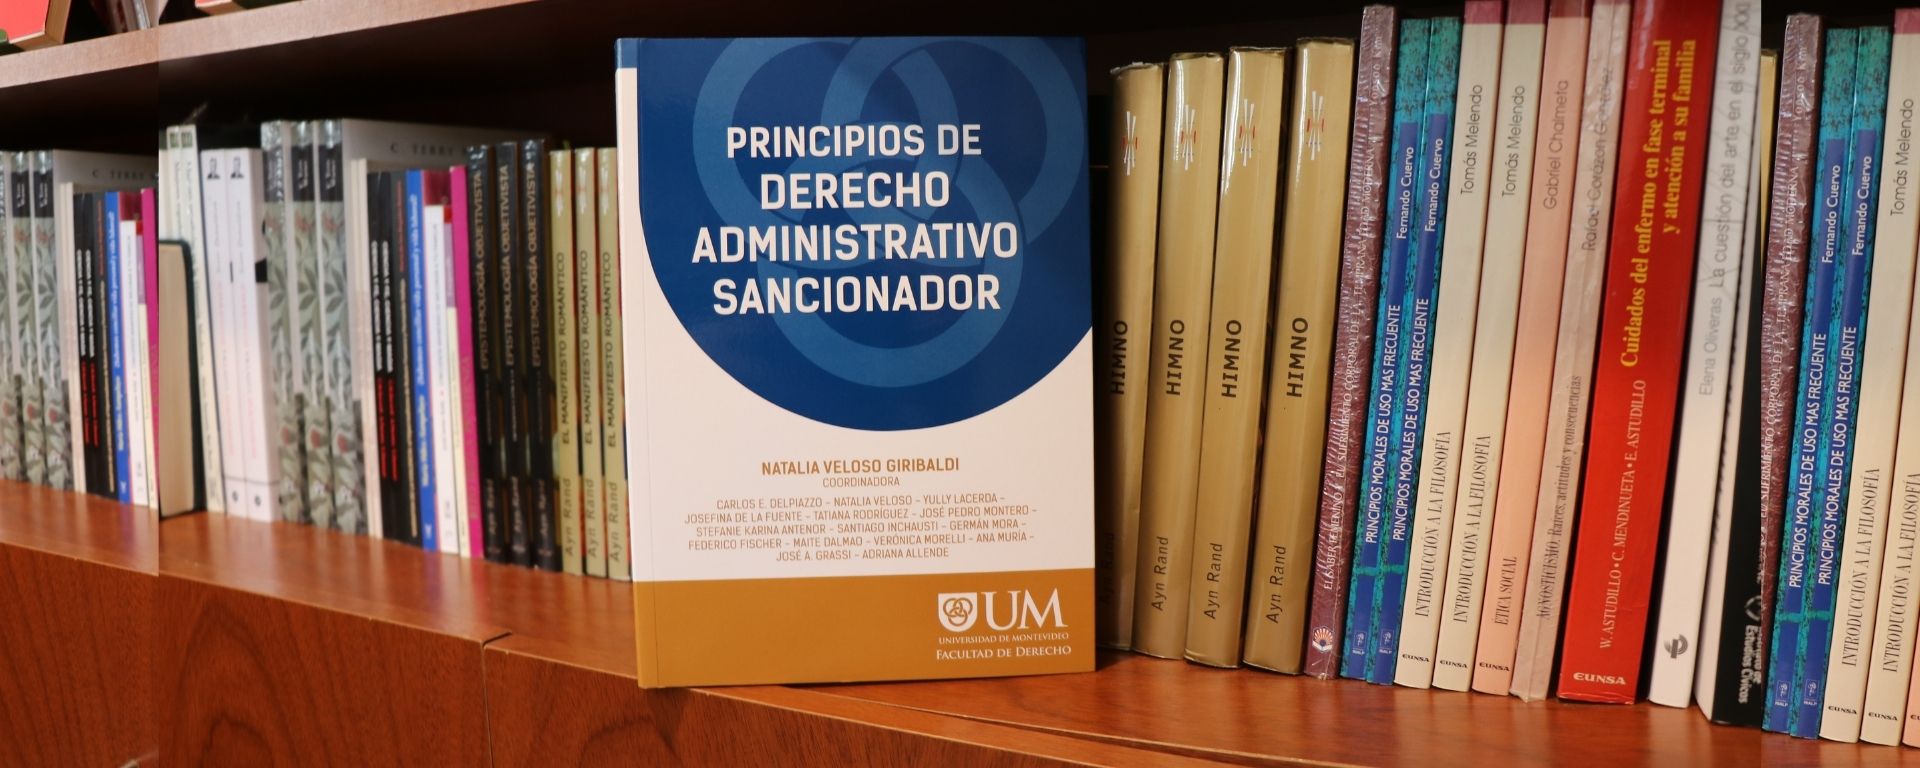 Presentación del libro "Principios de Derecho Administrativo Sancionador" 